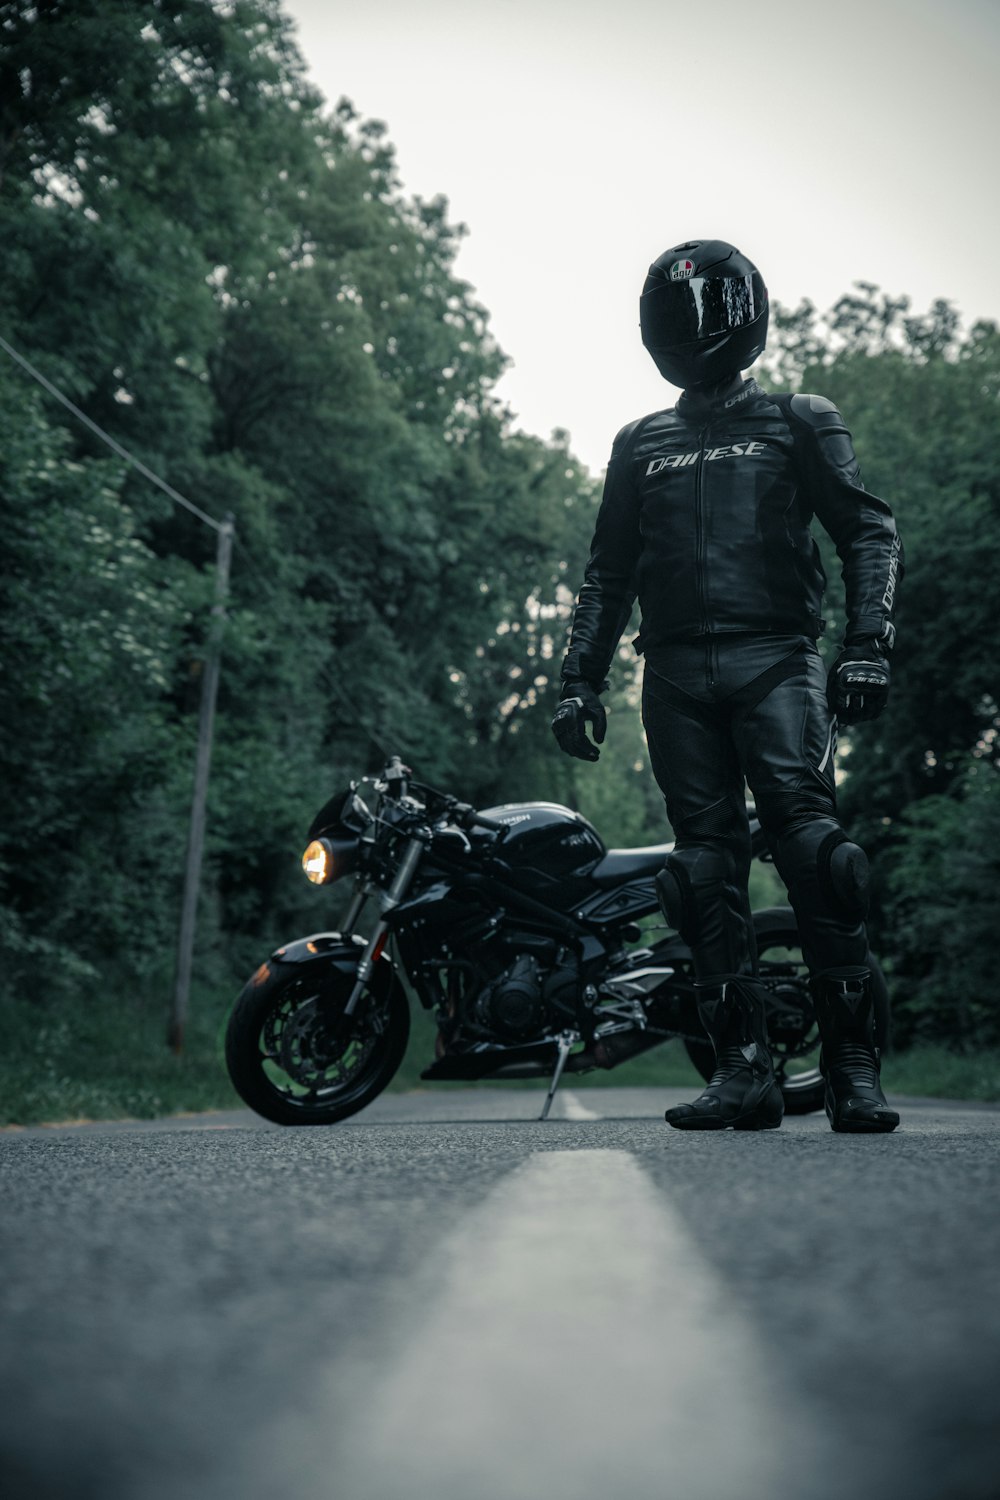 Mann in schwarzer Jacke und Helm fährt schwarzes Motorrad